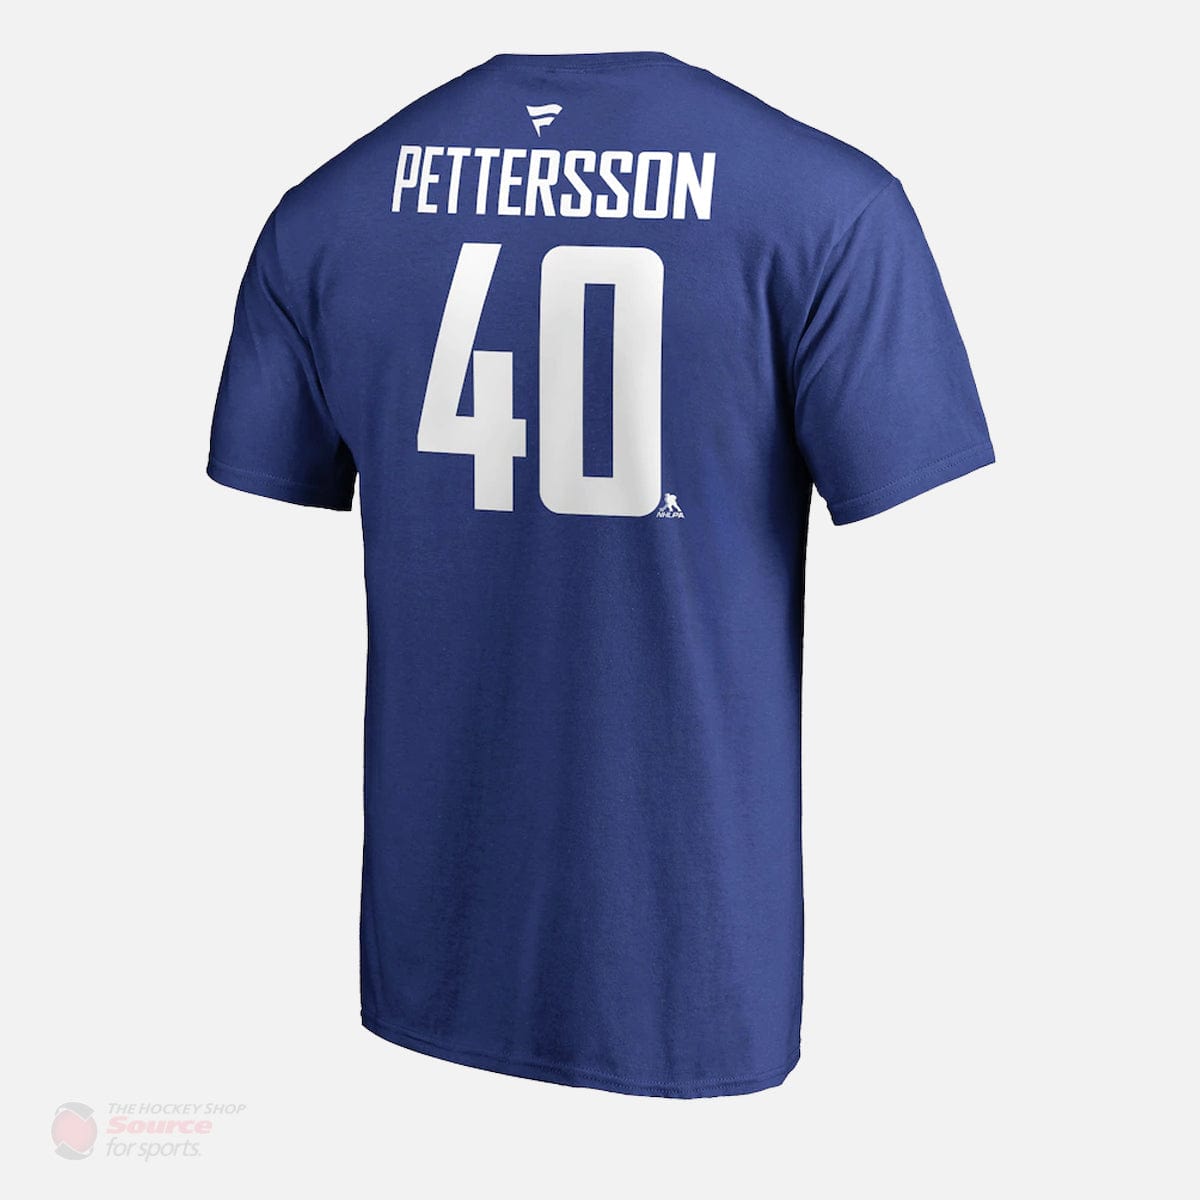 Vancouver Canucks Fanatics Authentic Name & Number Mens Shirt - Elias Pettersson